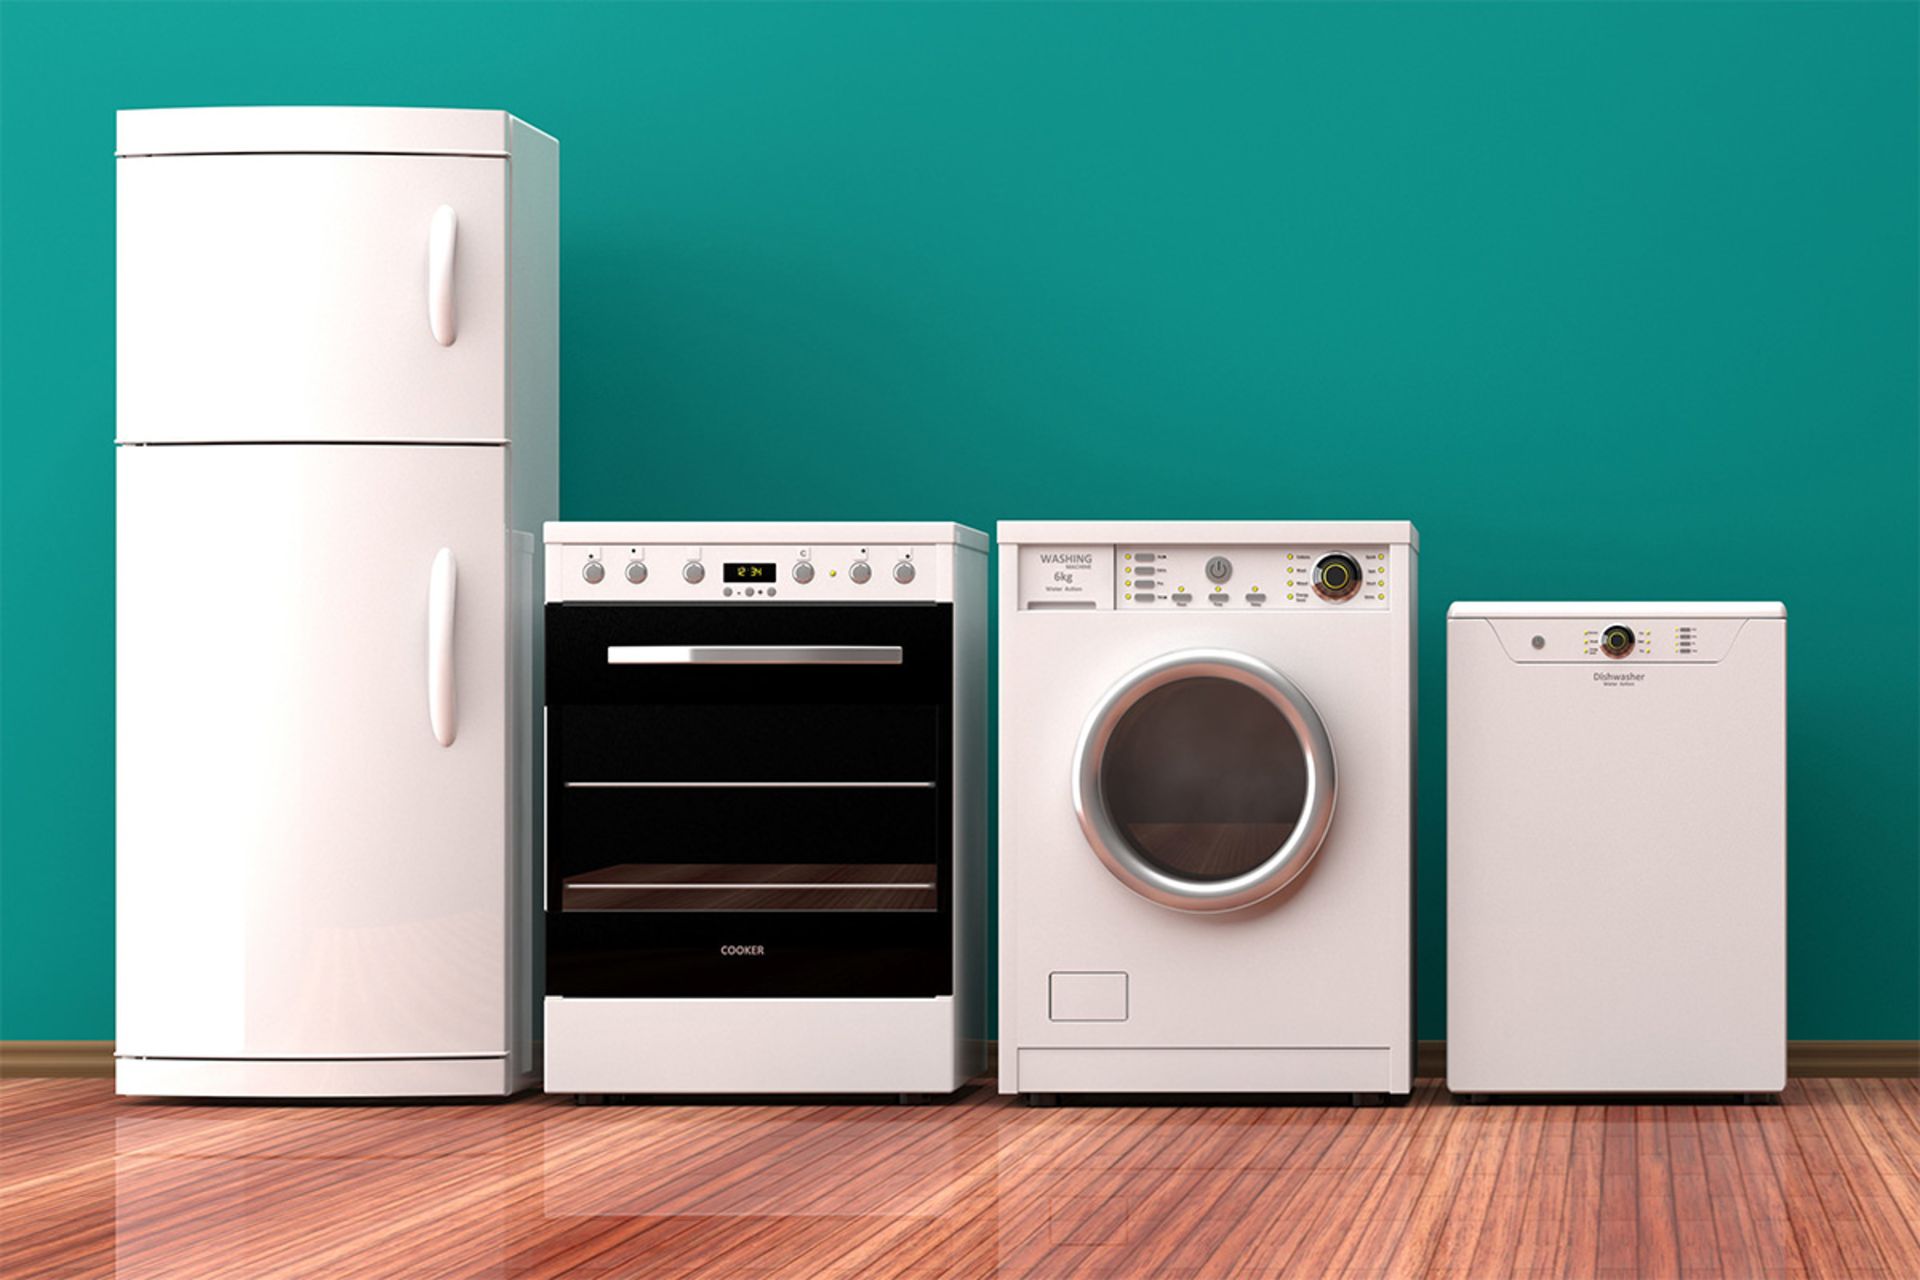 لوازم خانگی / home appliances / یخچال و فریزر گاز لباسشویی در خانه